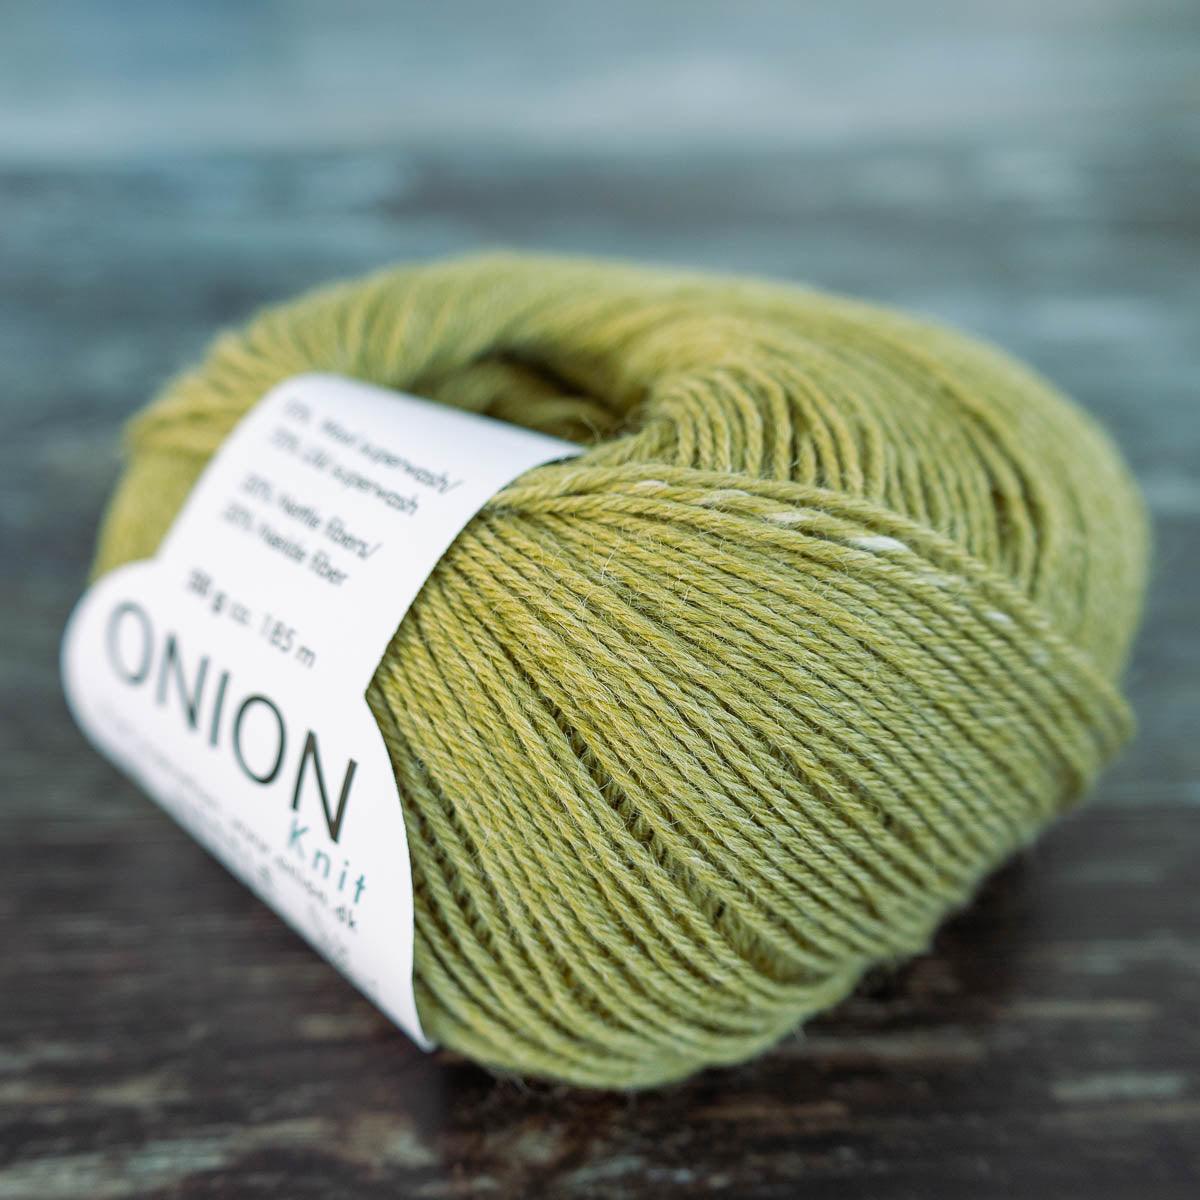 Onion Onion Nettle Sock Yarn - 1030 olivengrøn - Yarn